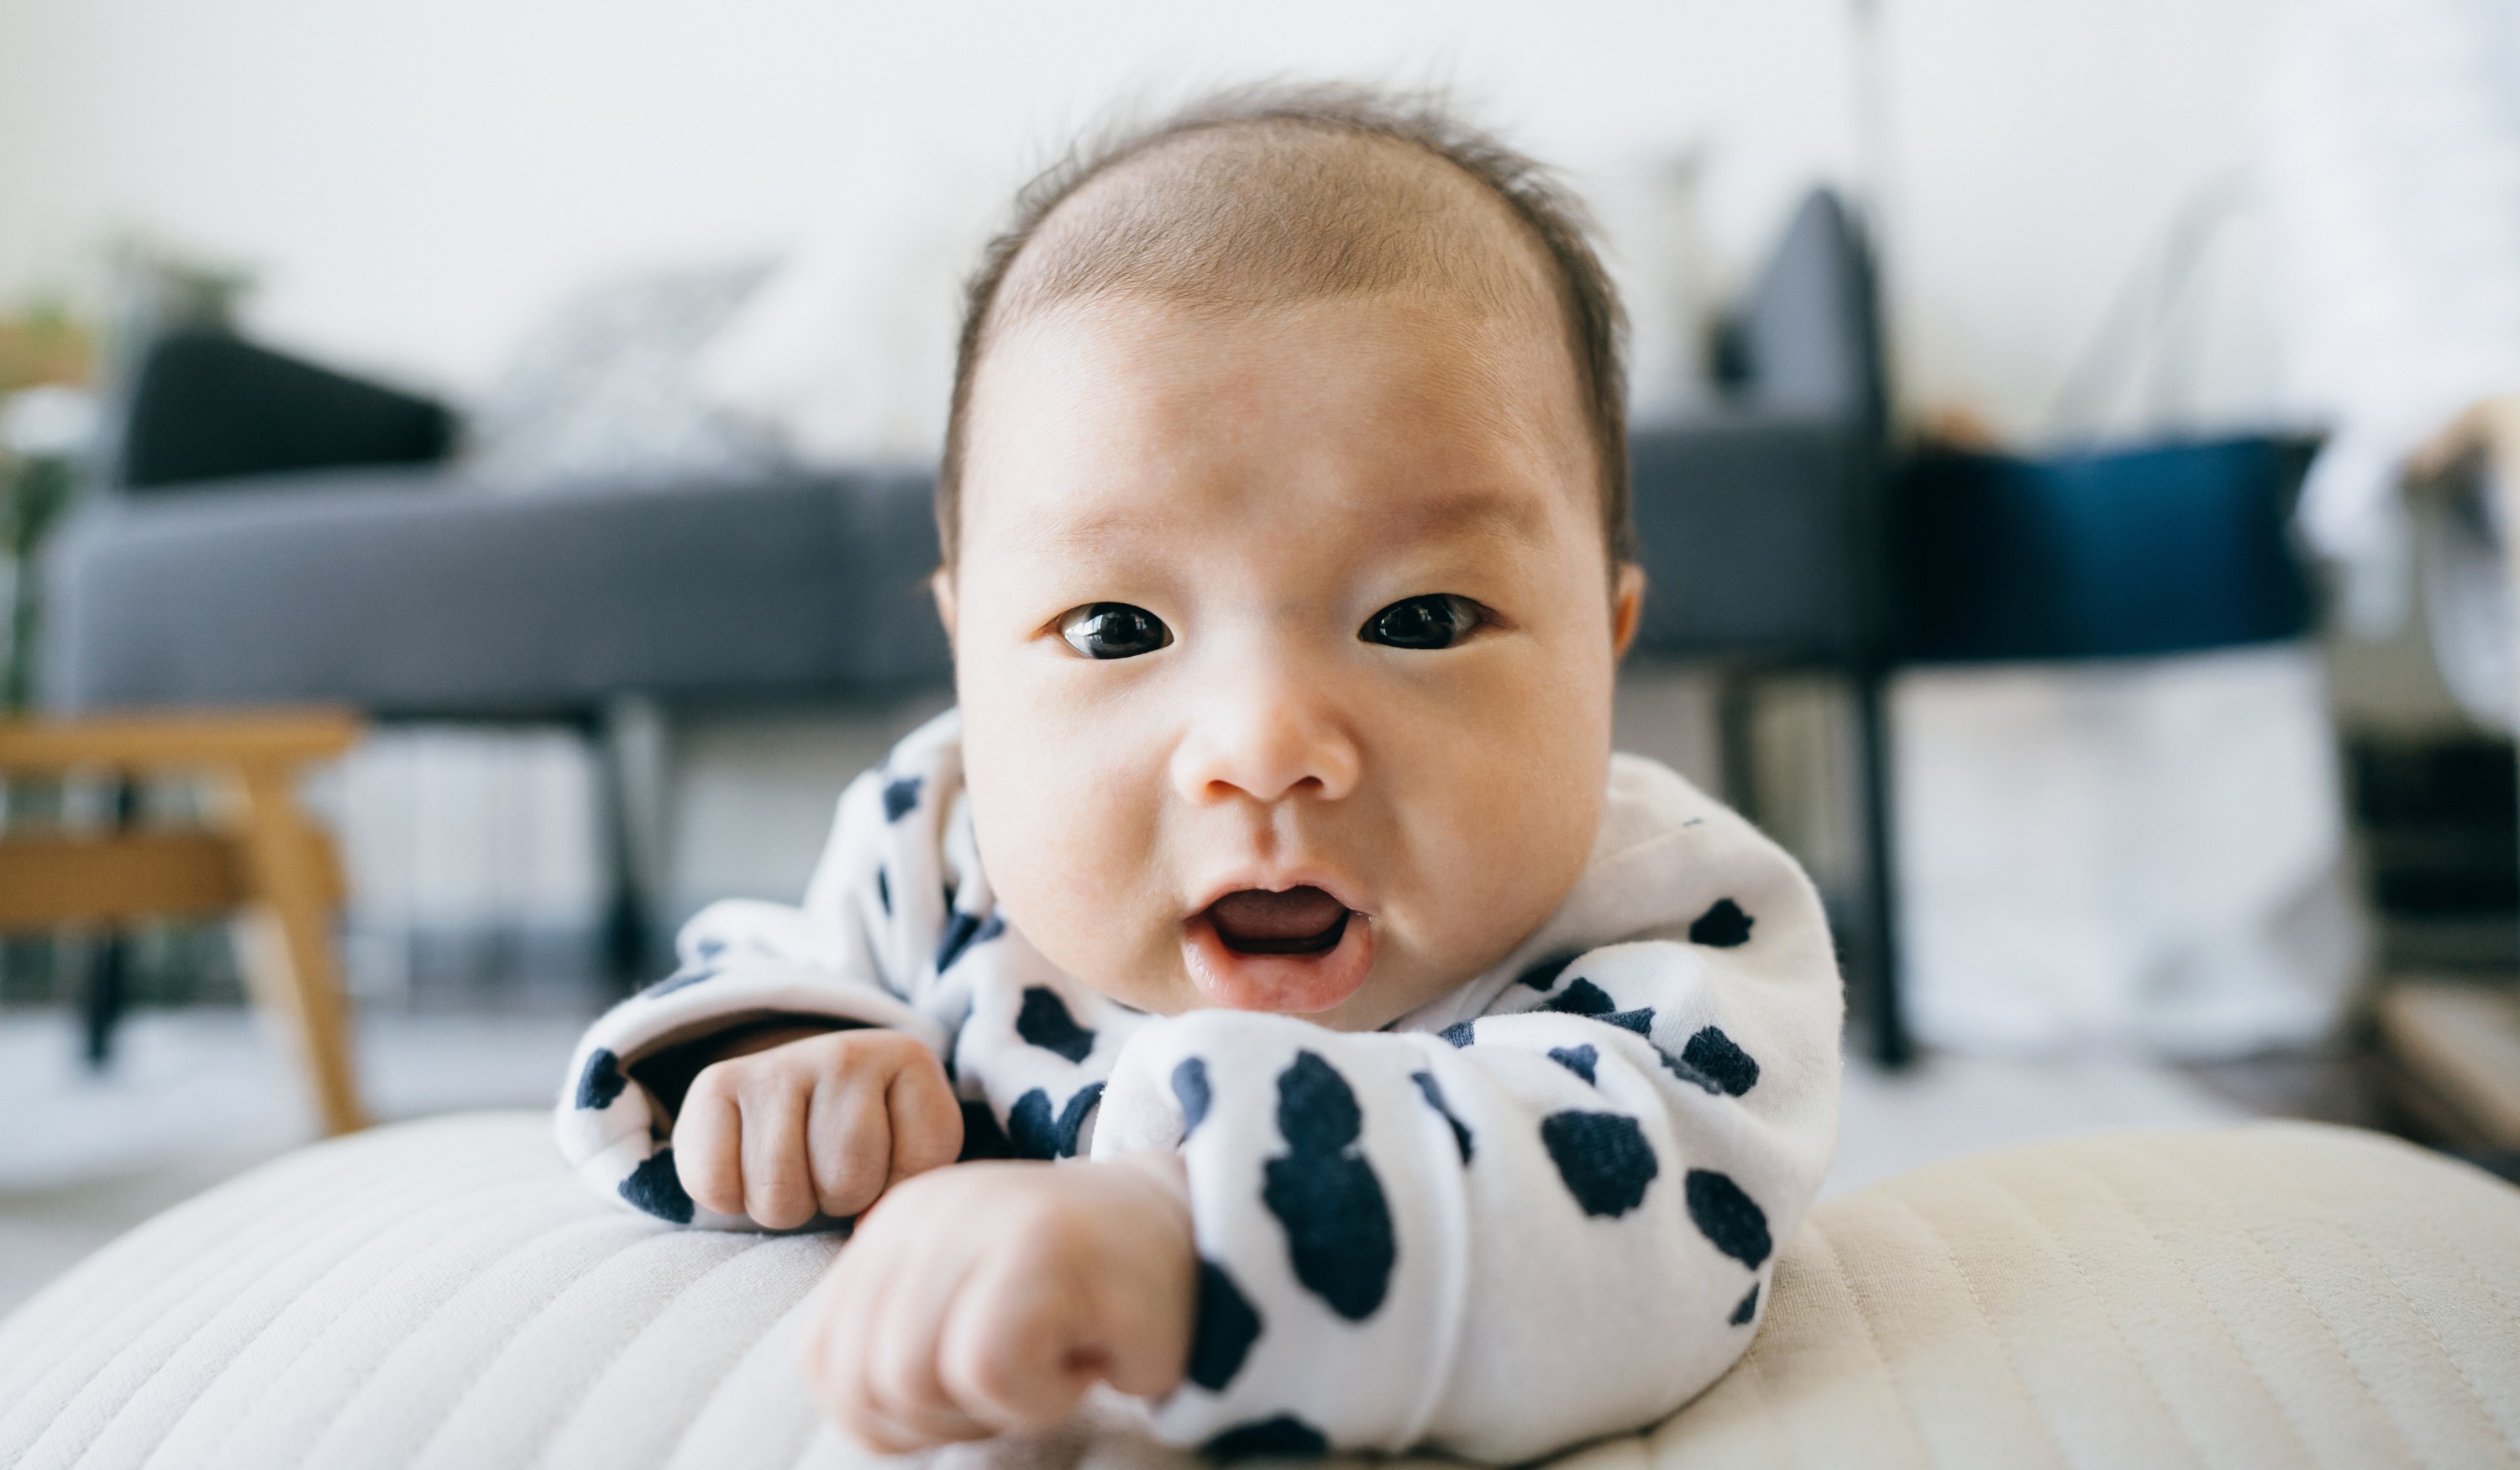 3 Ways to Do Tummy Time with a Newborn - wikiHow